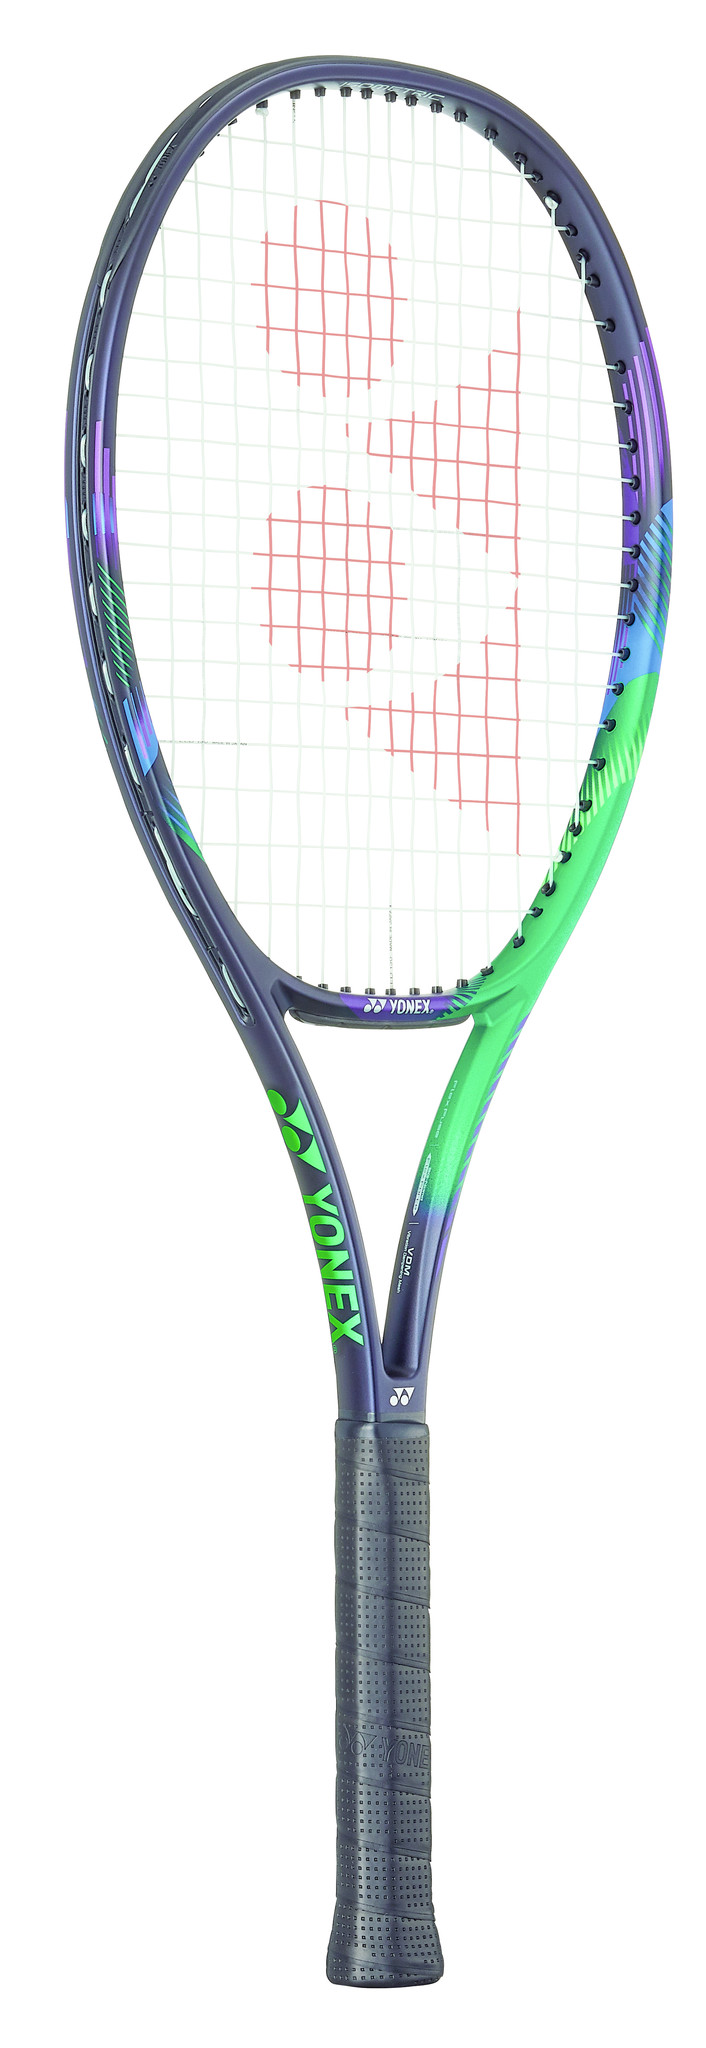 ヨネックス YONEX VCORE PRO100 ブイコア 硬式テニスラケット+nuenza.com